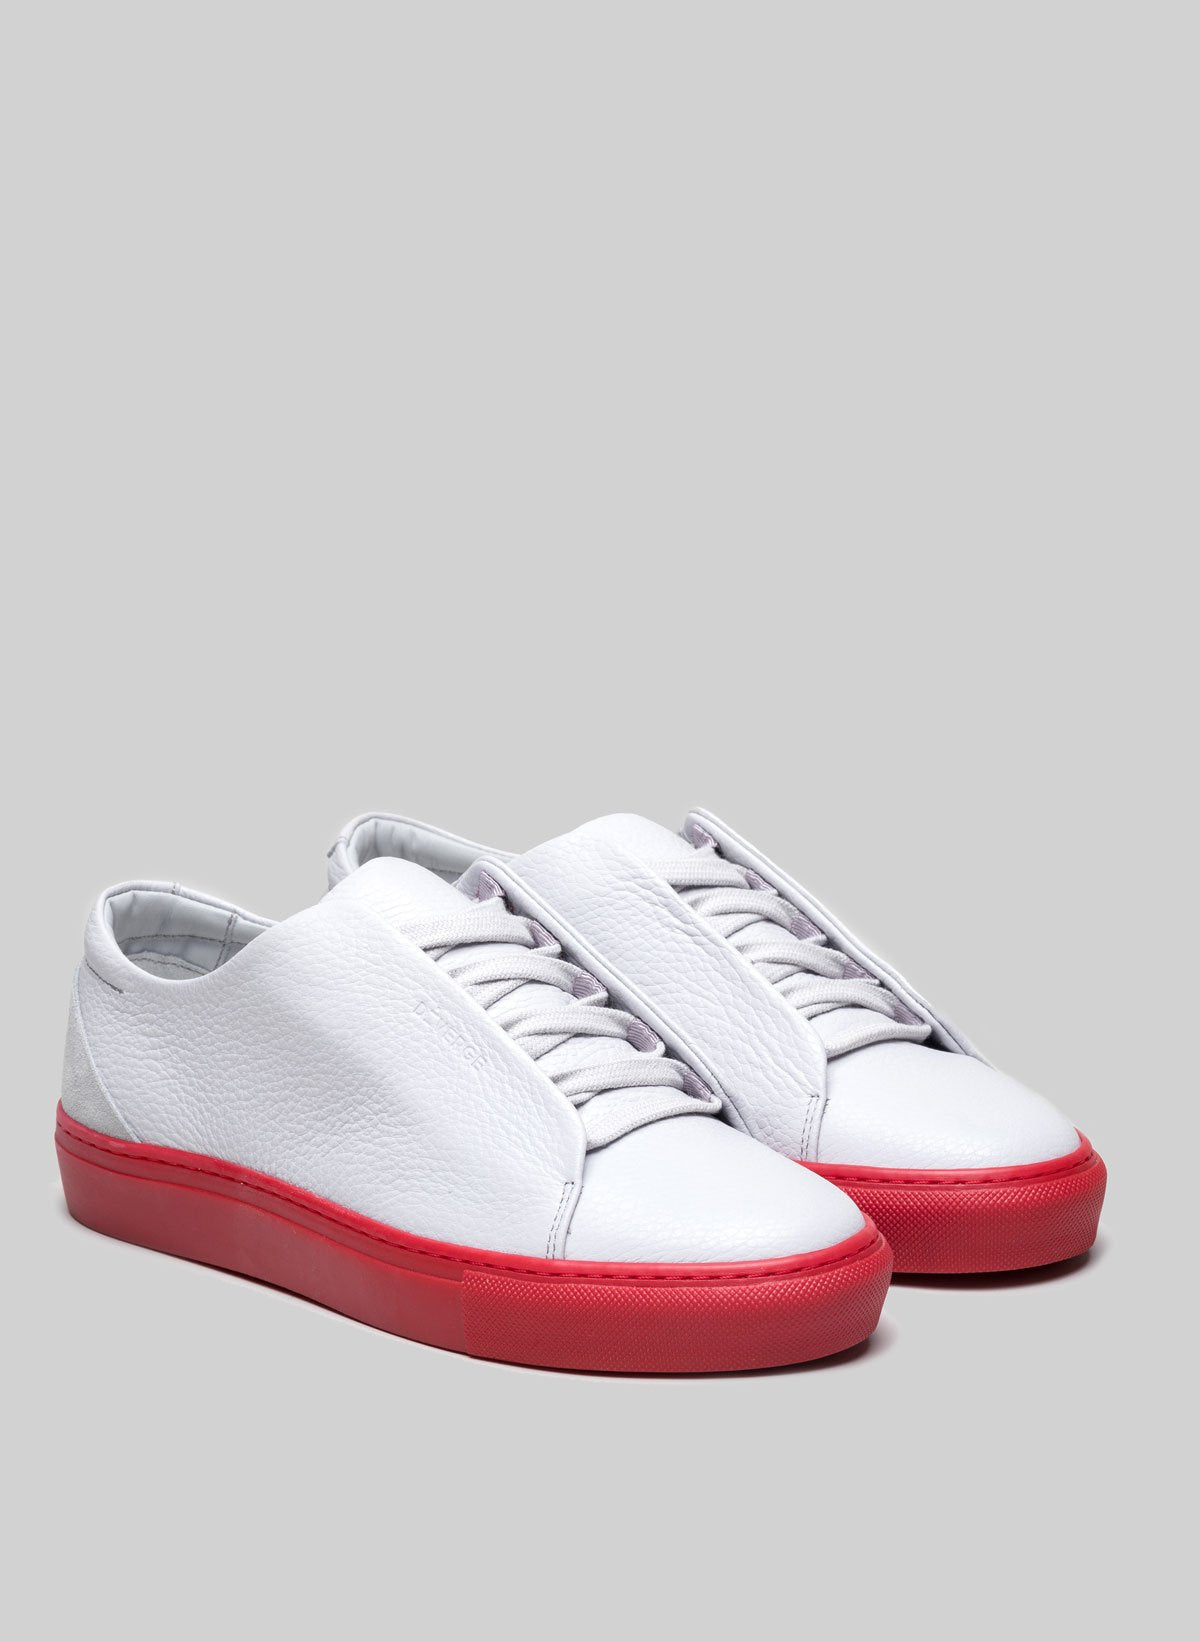 Un par de low top custom blancas sneakers con suela roja de Diverge.